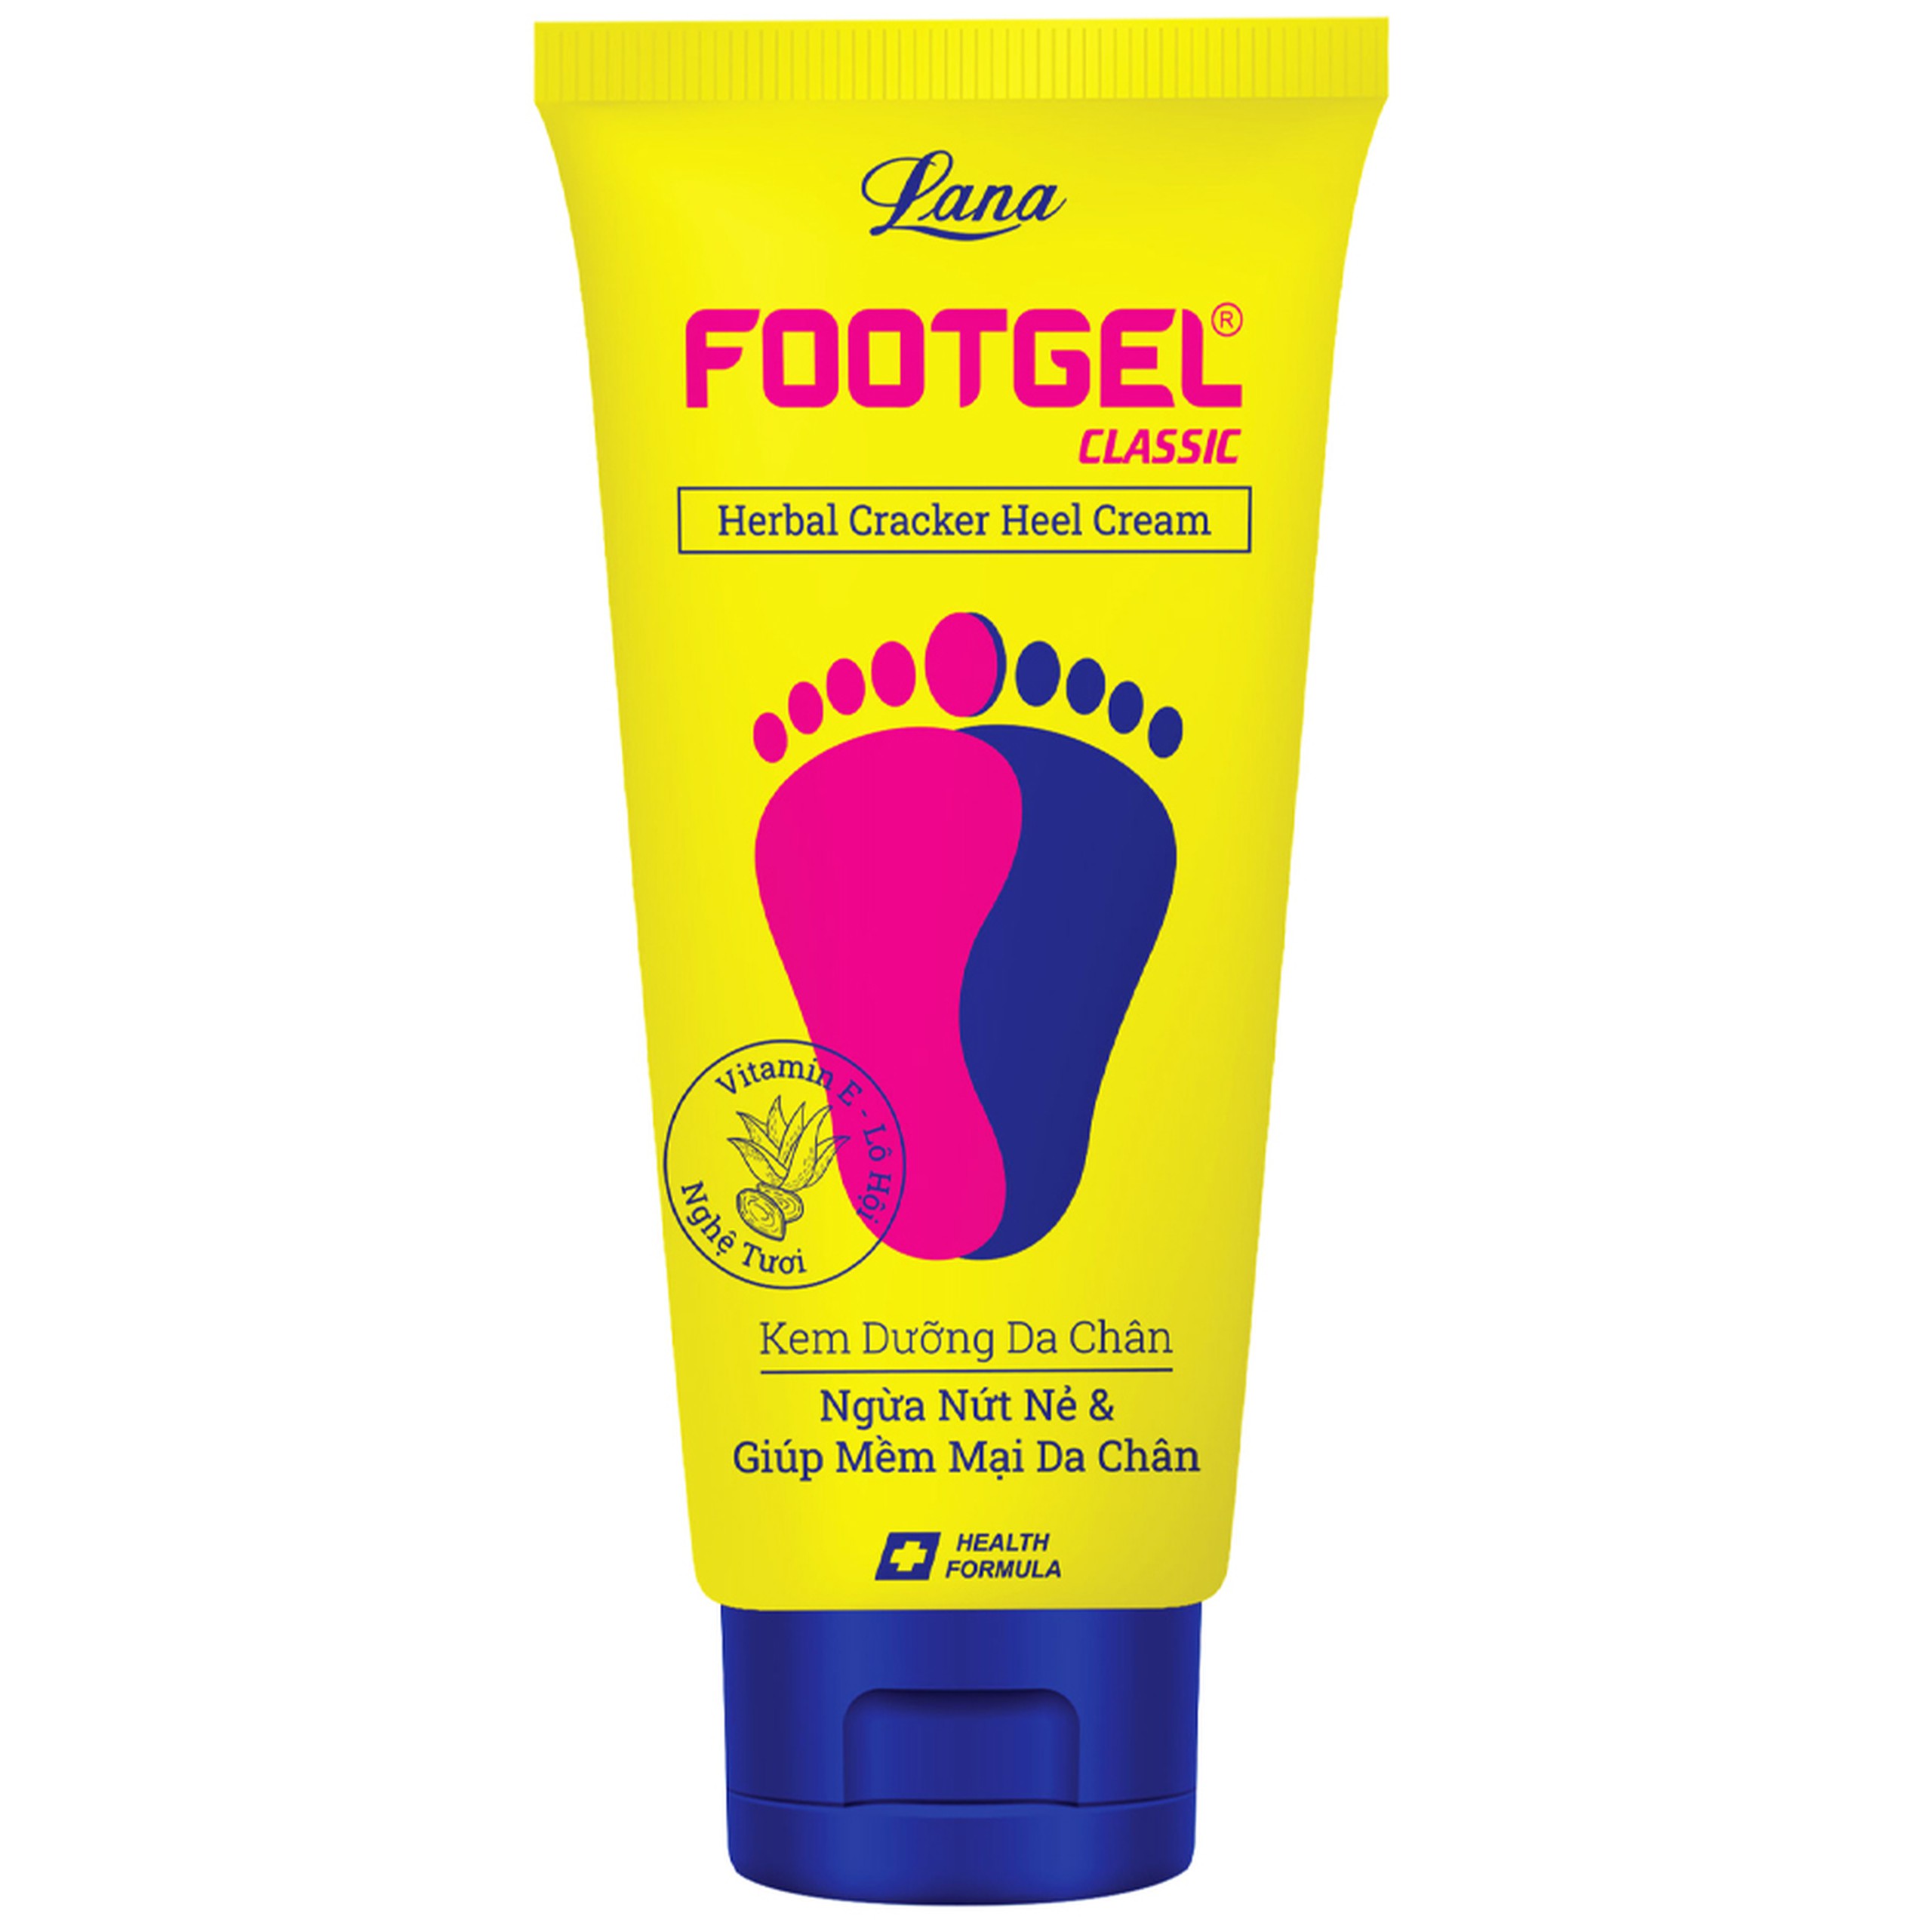 Kem dưỡng da chân Footgel Classic Lana chống nứt nẻ và làm mềm da chân (50g)